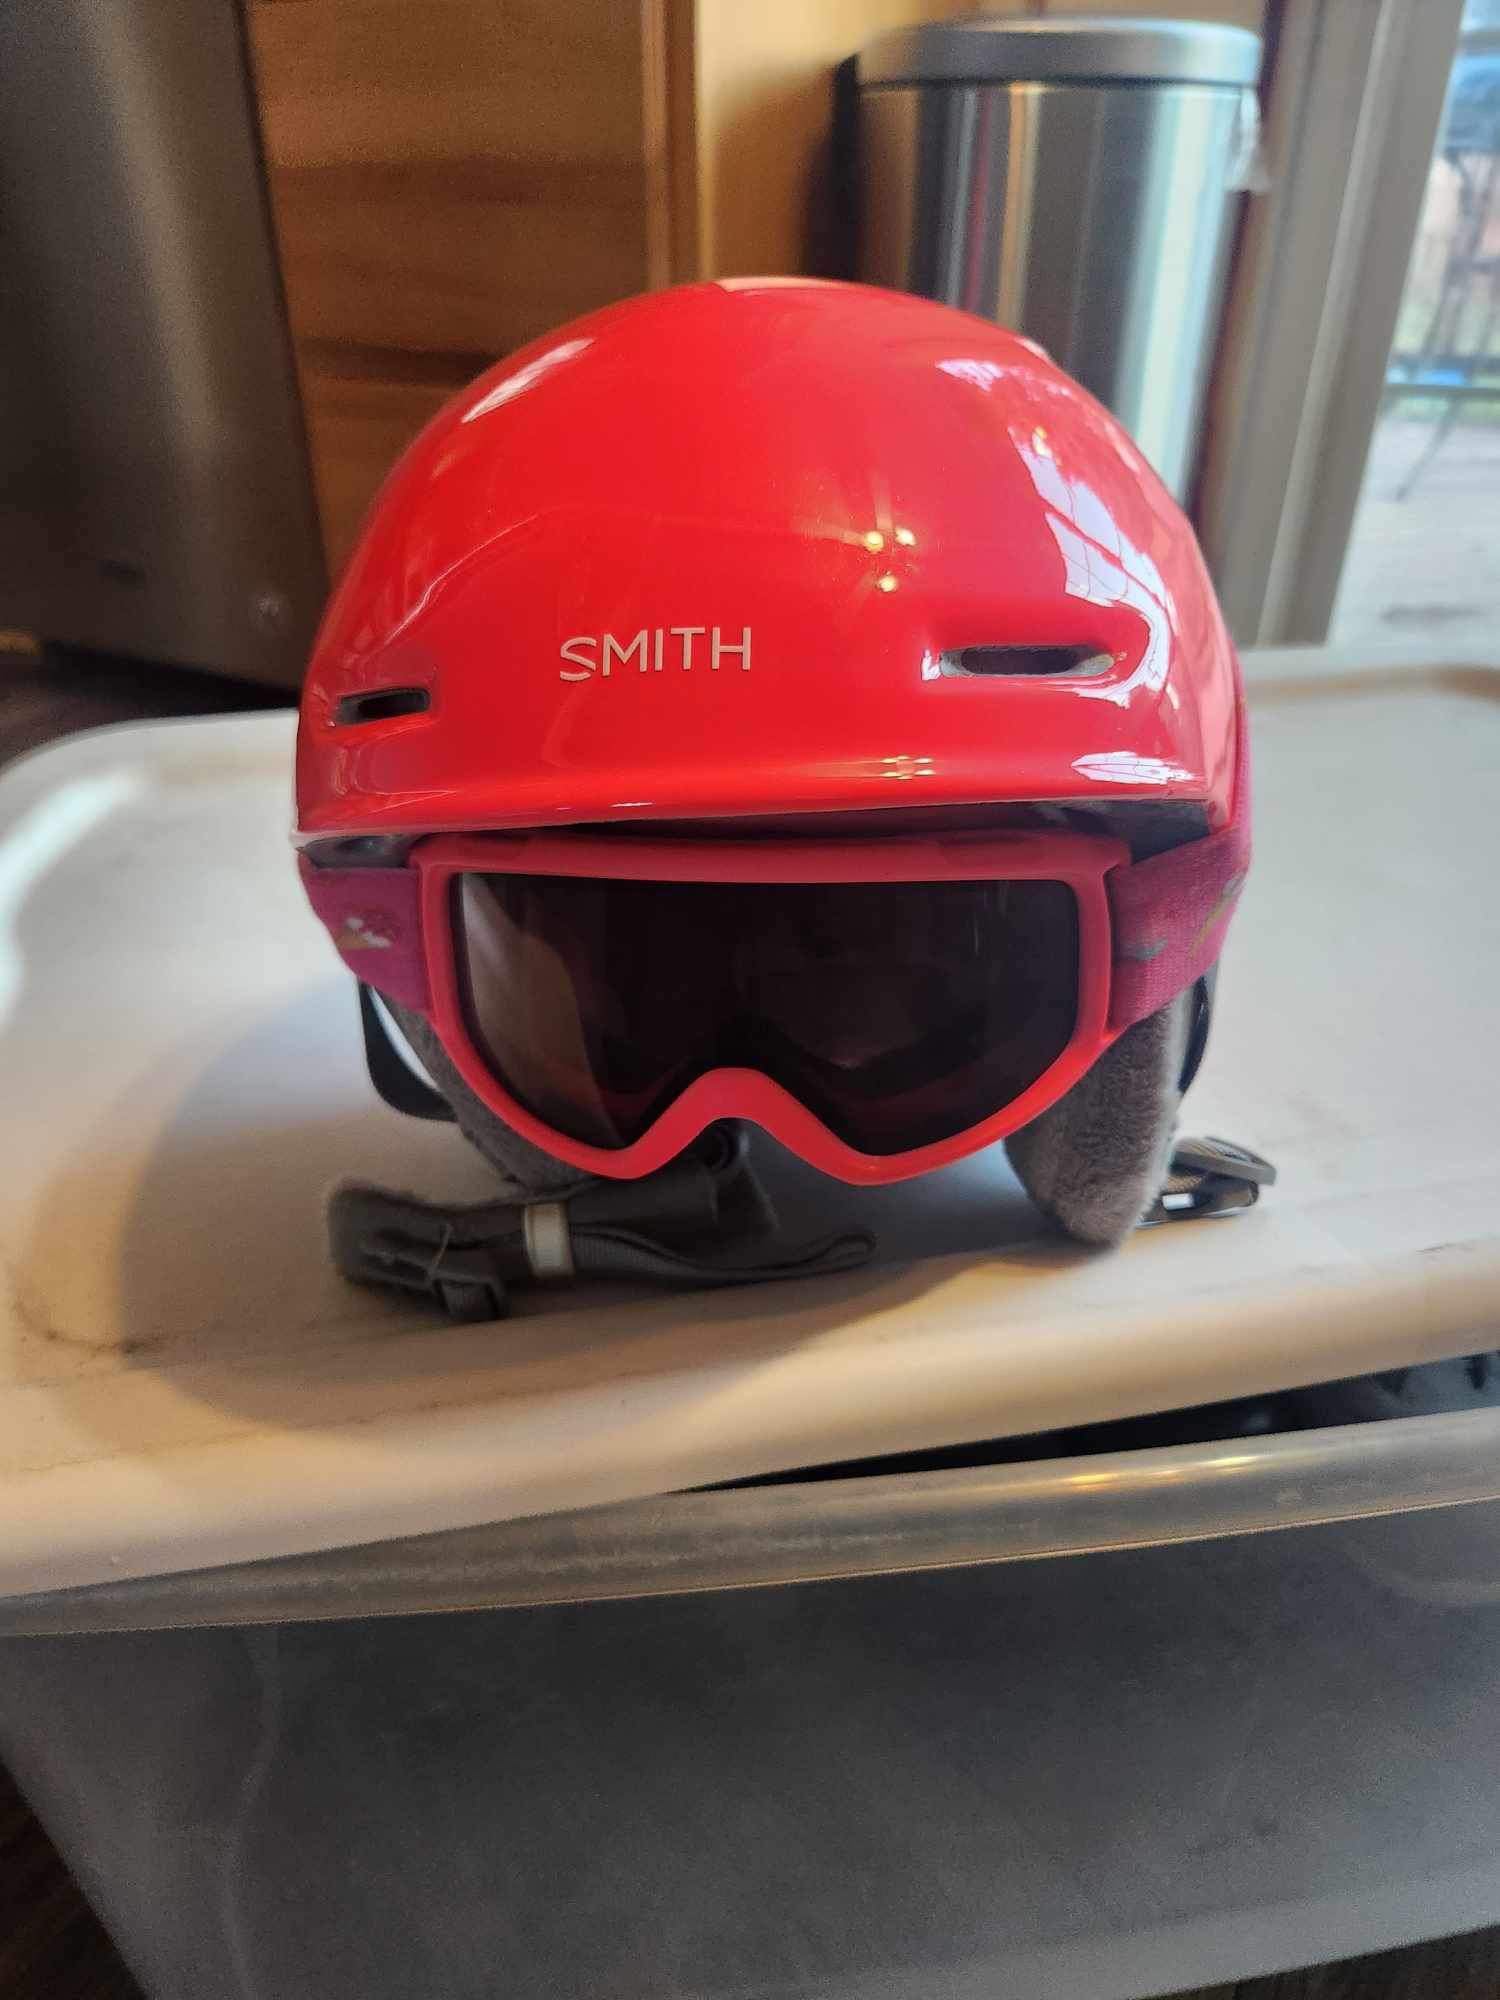 Smith Snowboarding Helmet